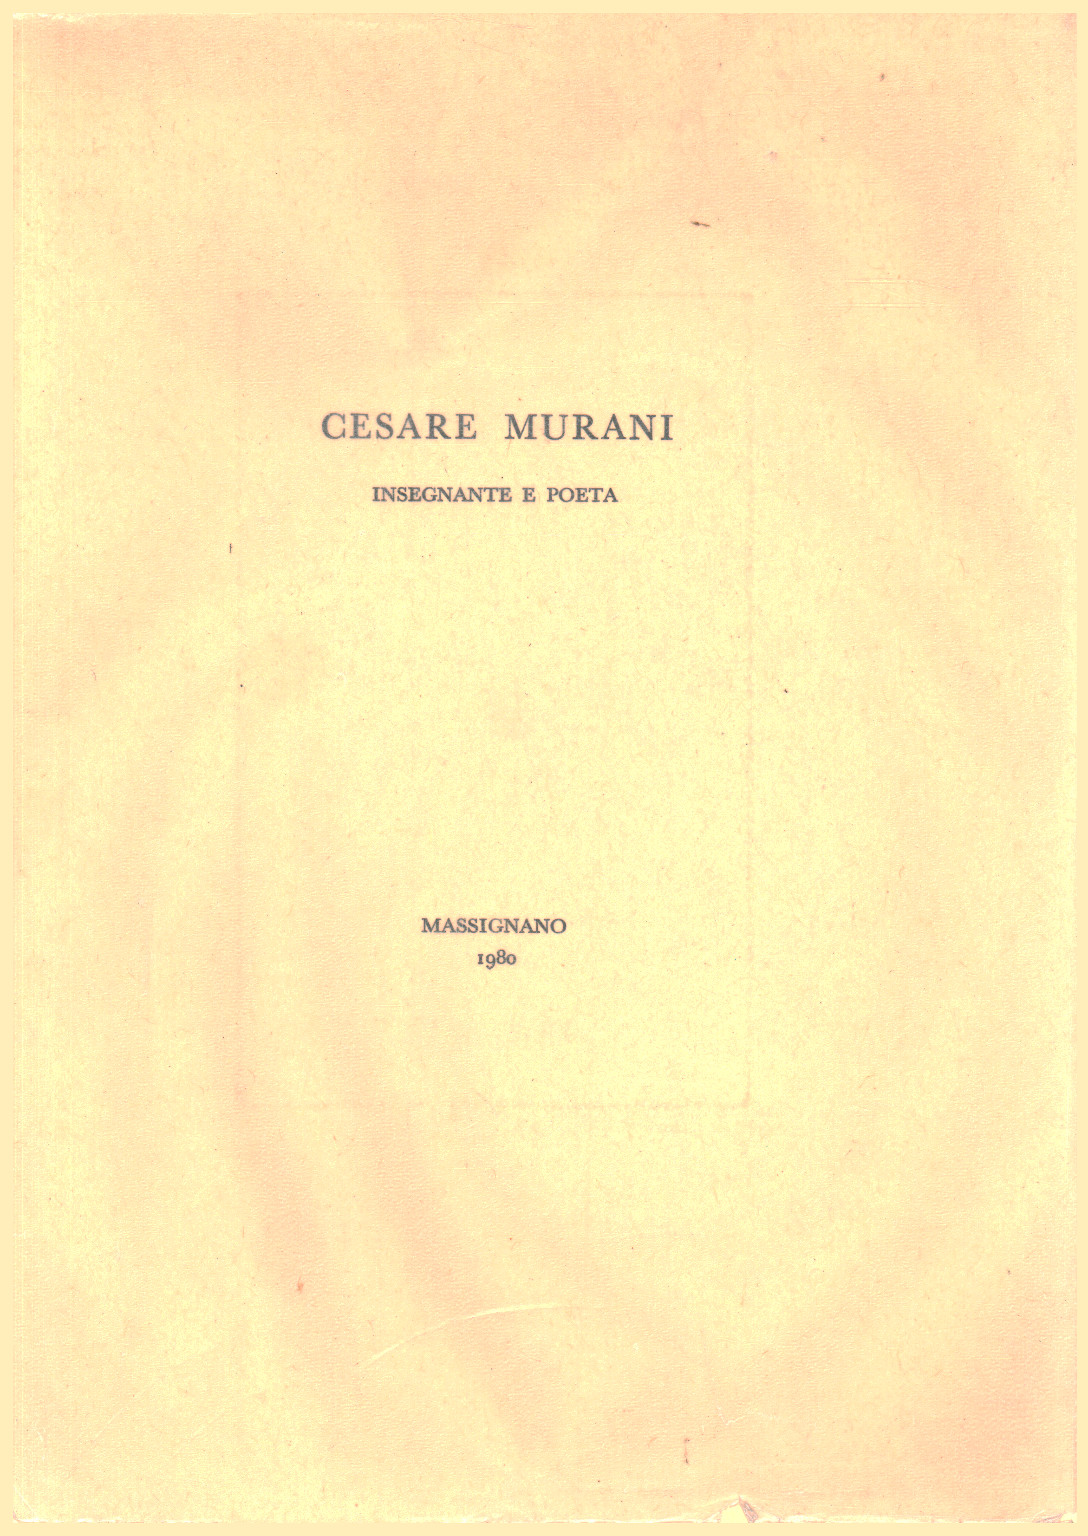 Cesare Murani. Professeur et poète, s.un.